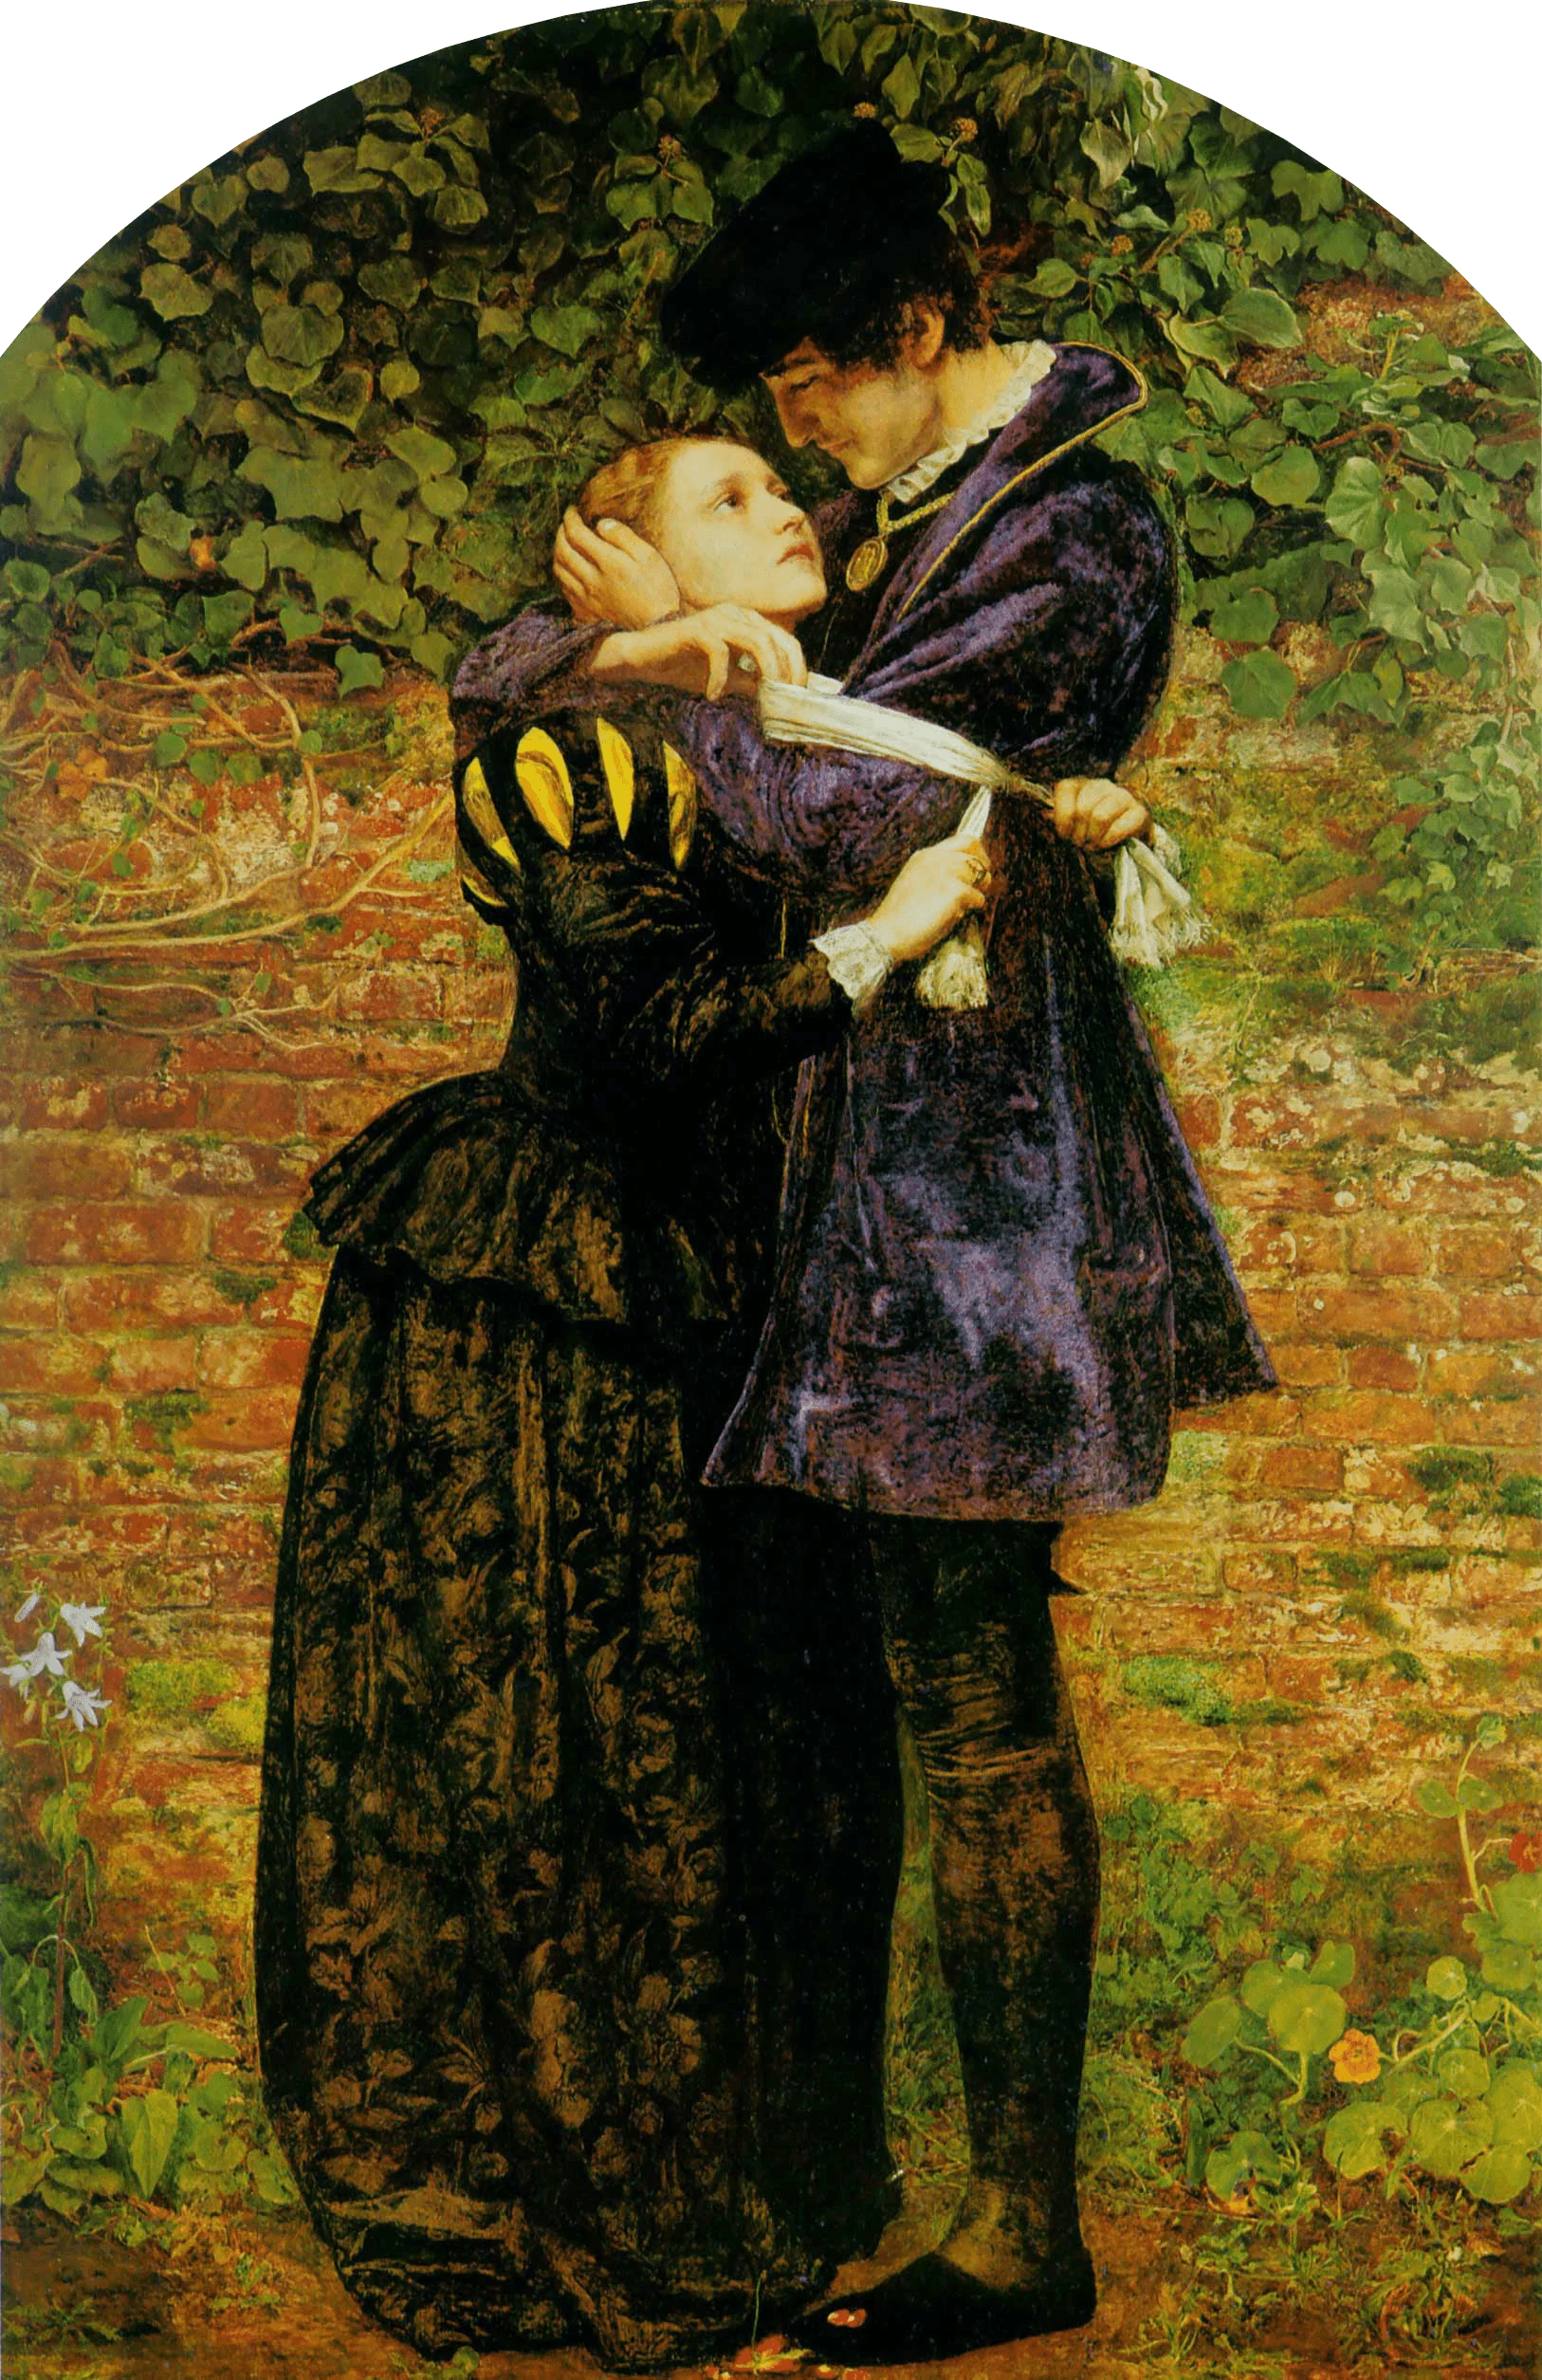 John Everett Millais, The Artists